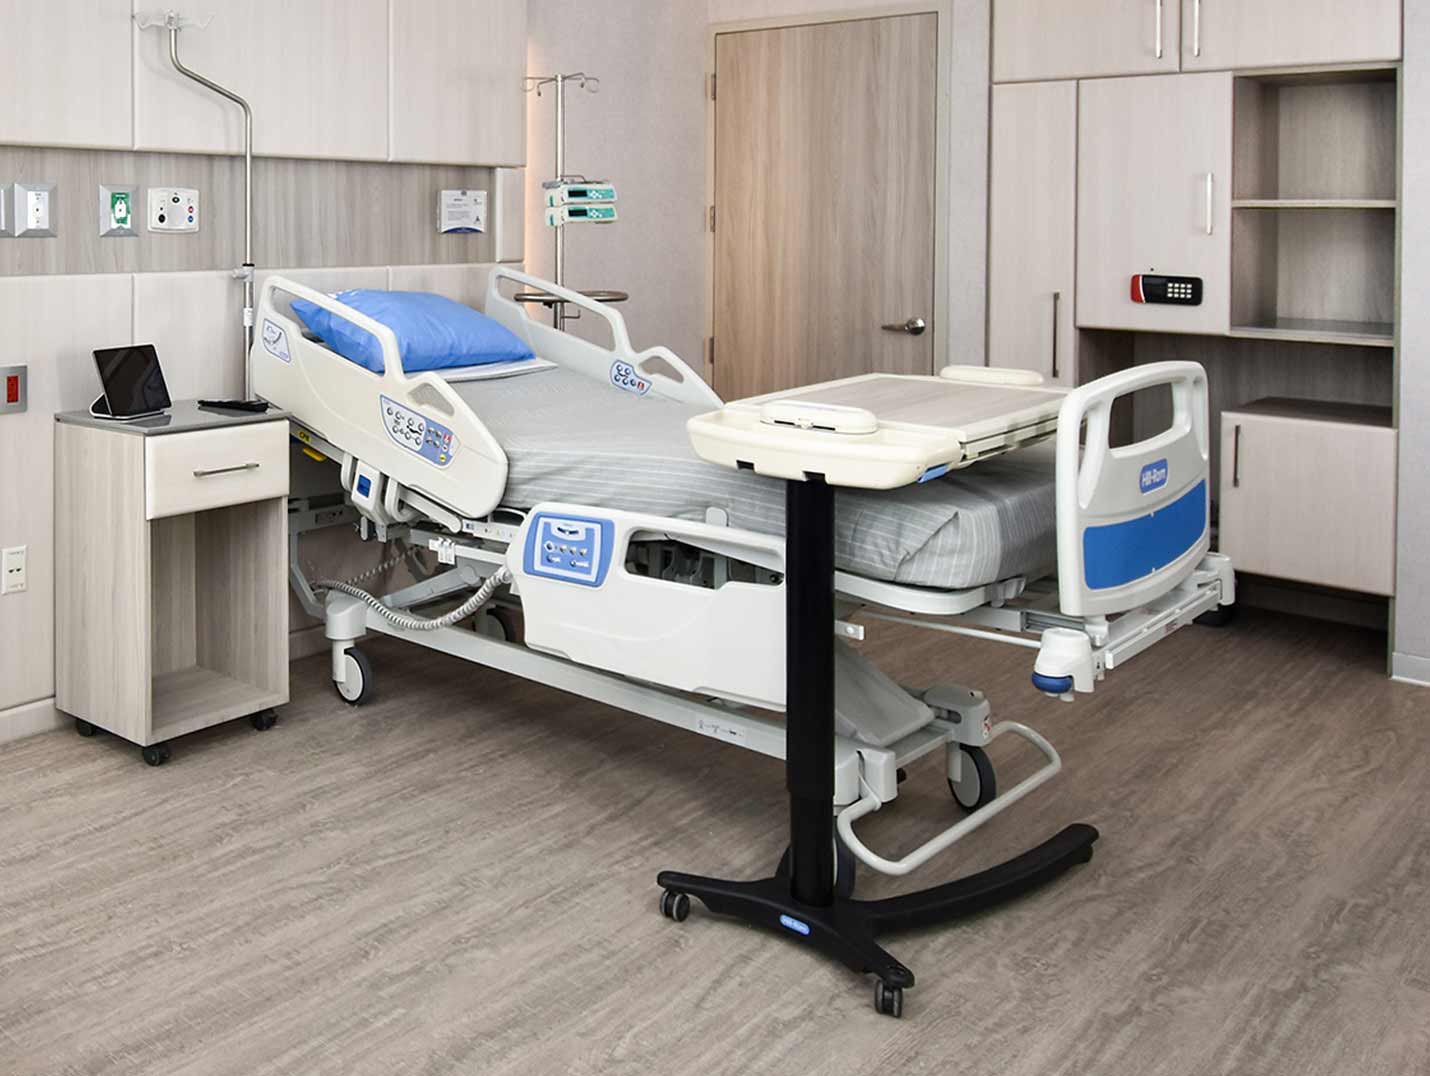 Habitación hospitalaria pintada en tonos grises, con una cama cubierta con una sábana gris y una almohada azul encima